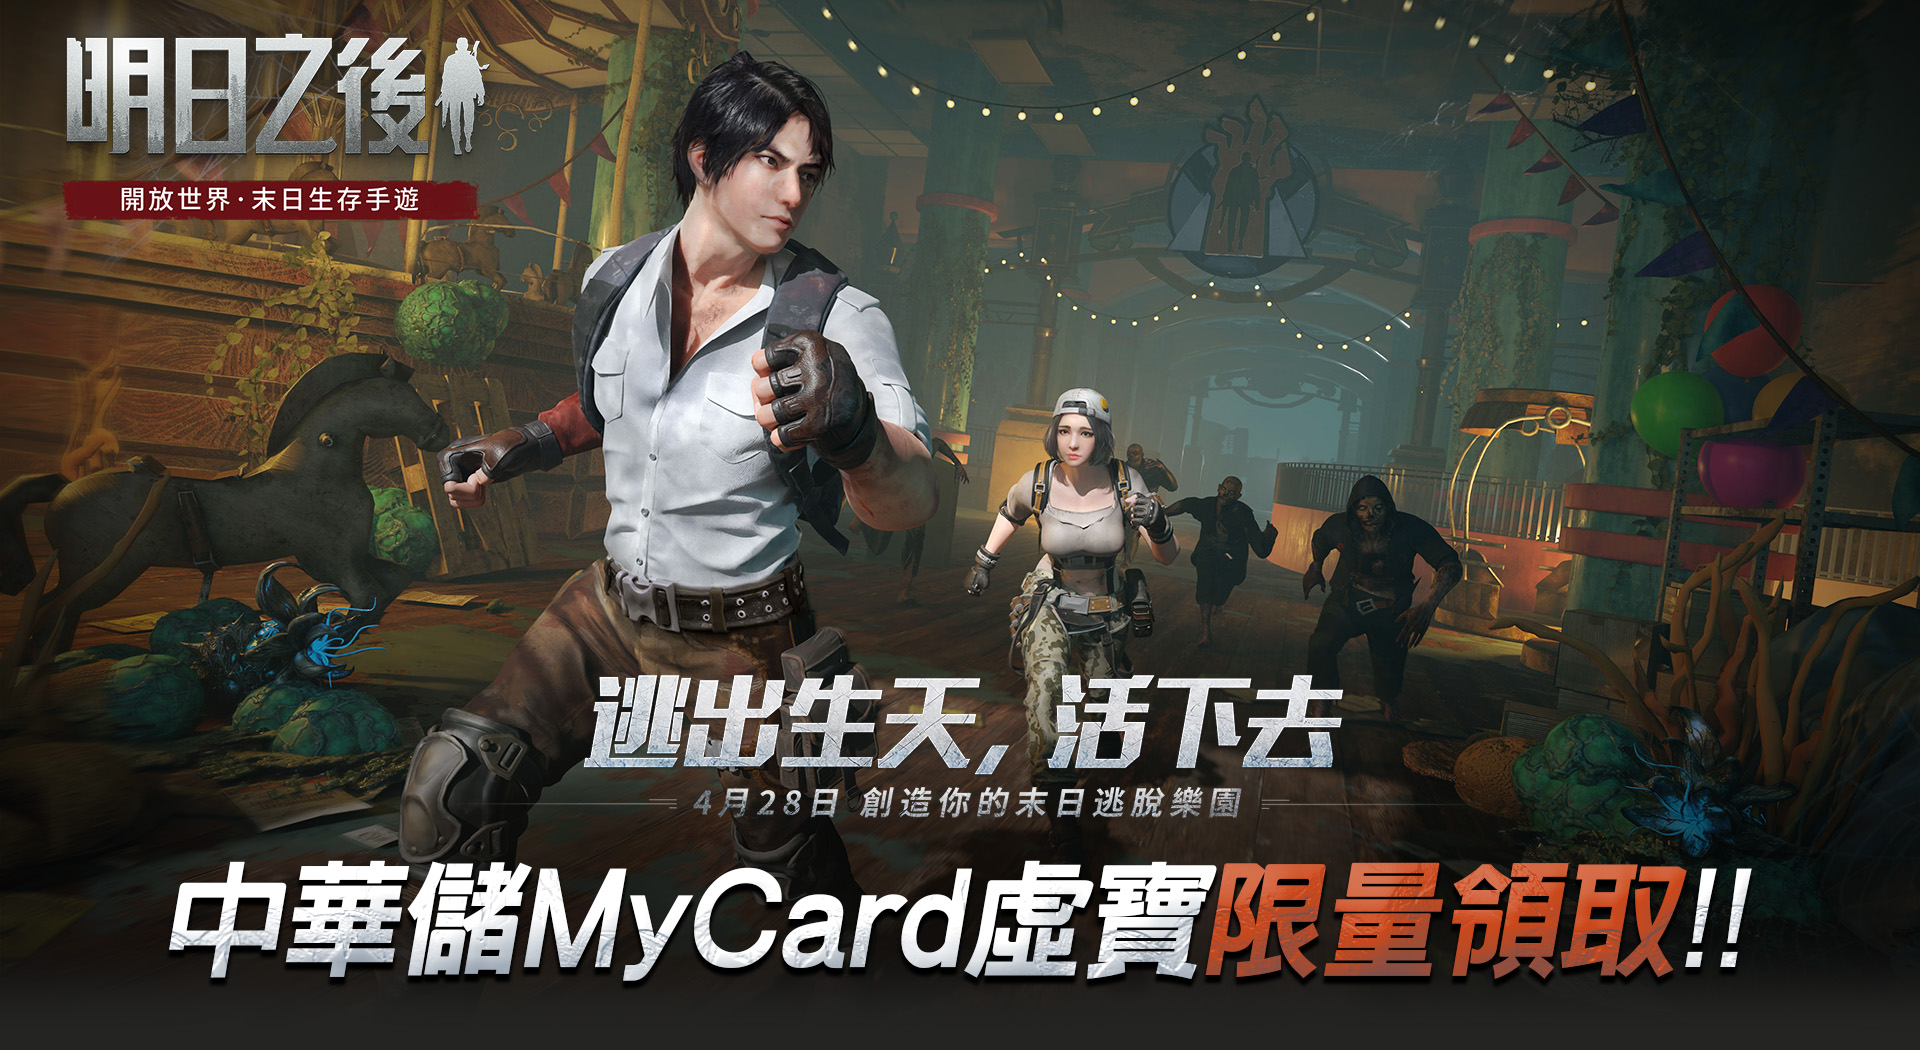   《明日之後》中華儲MyCard專屬卡限量領取 | 中華電信